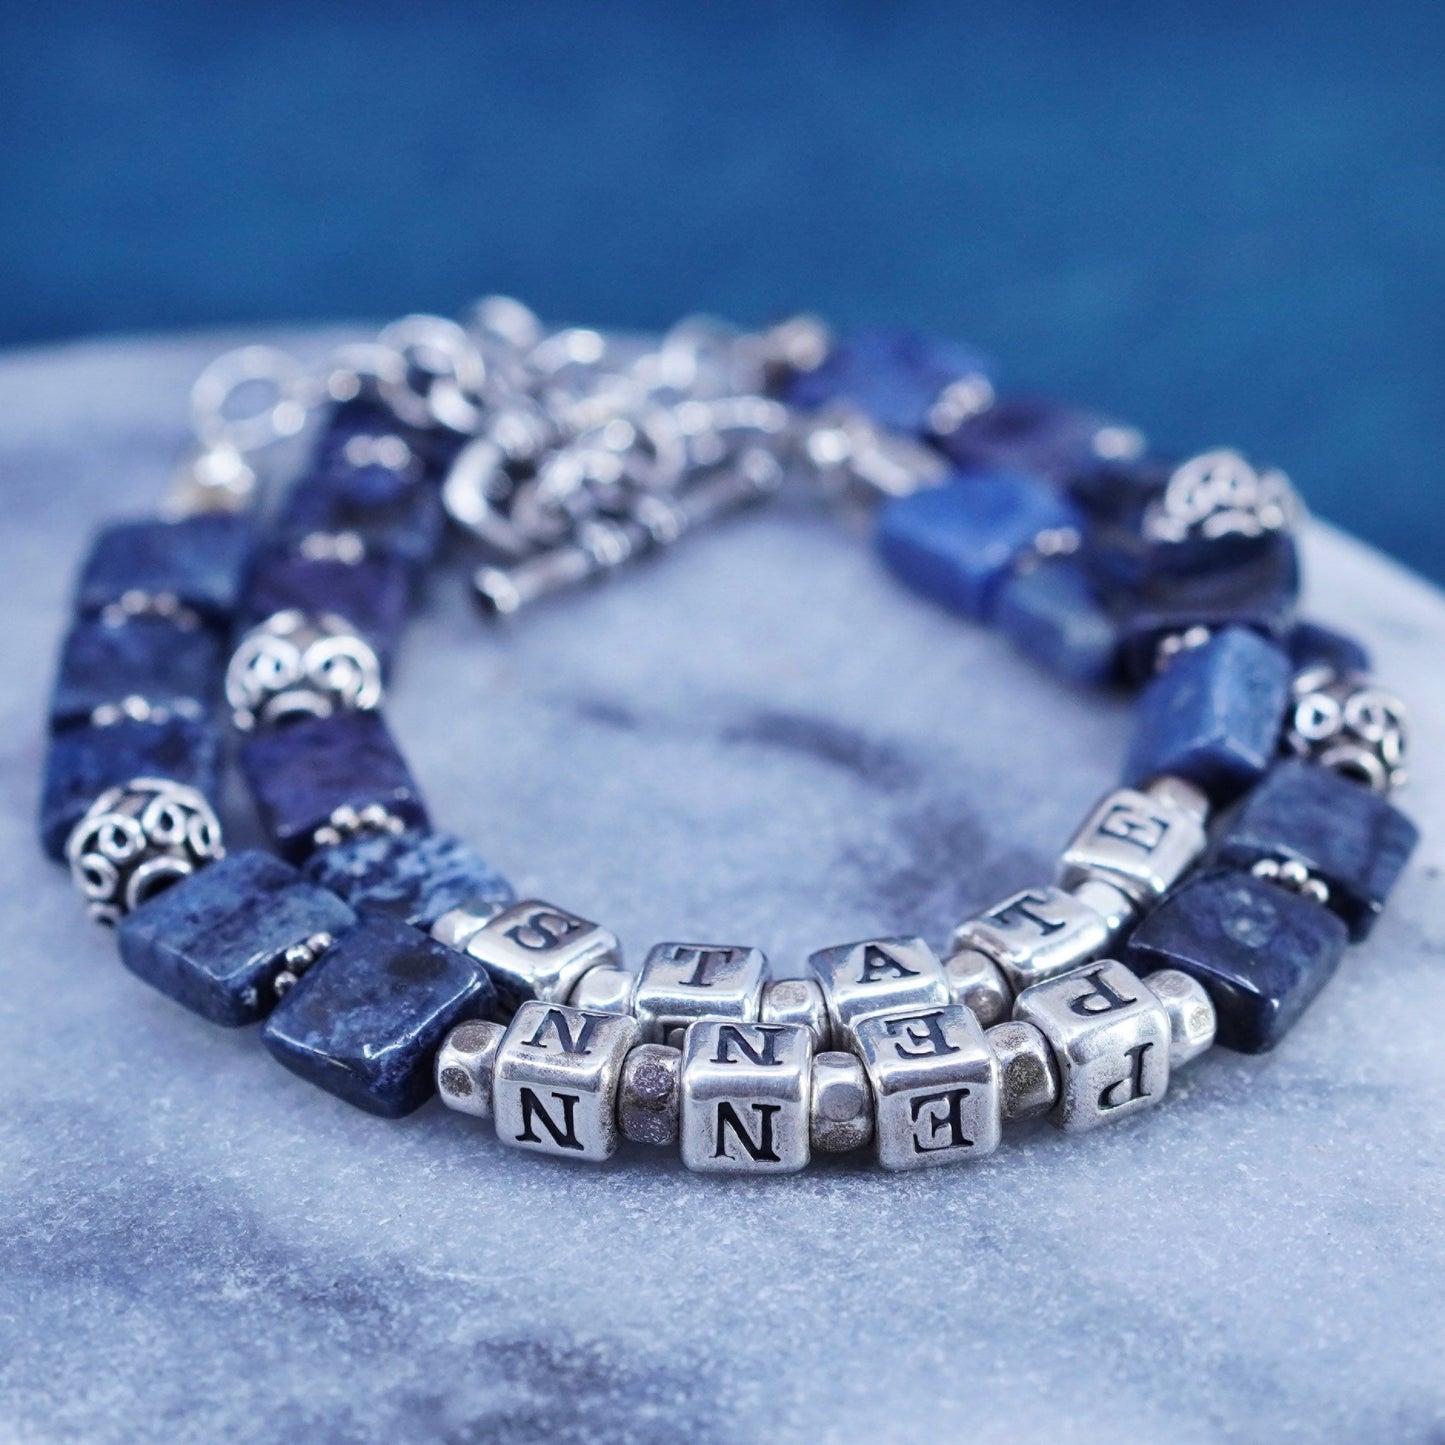 6.75”, Sterling silver handmade name “state penn” cube bracelet sodalite beads